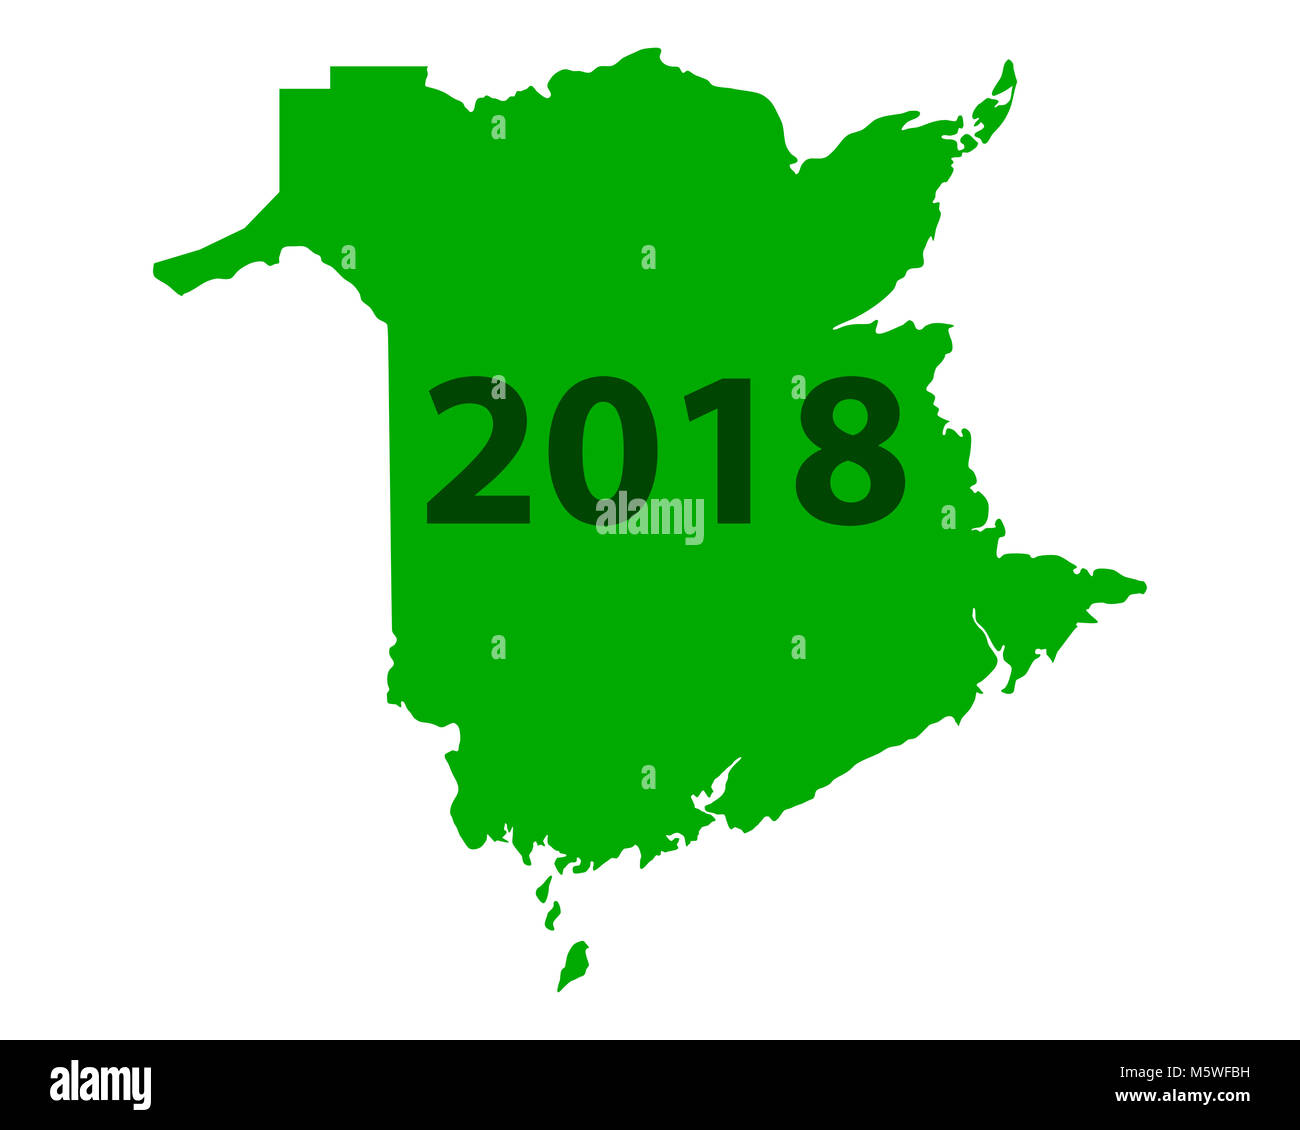 Map Of New Brunswick 2018 M5WFBH 